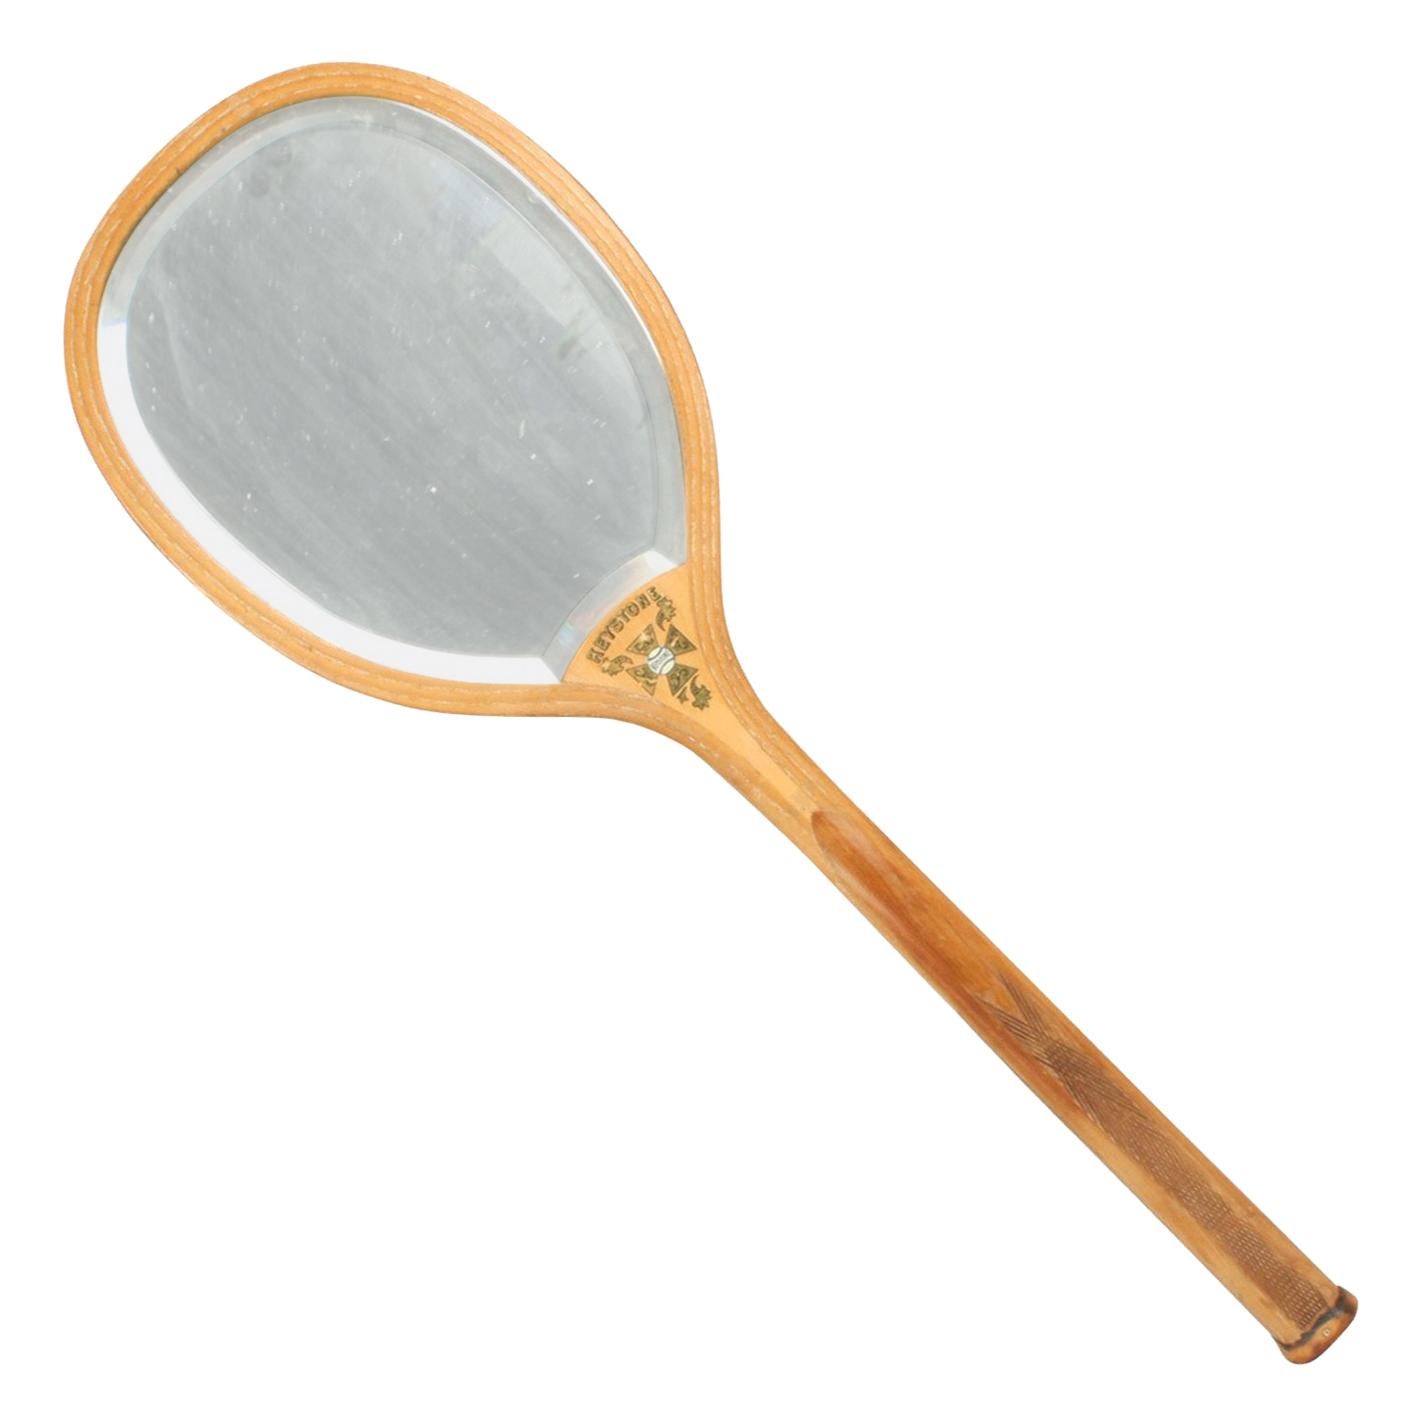 Antique Lawn Tennis Racket Mirror